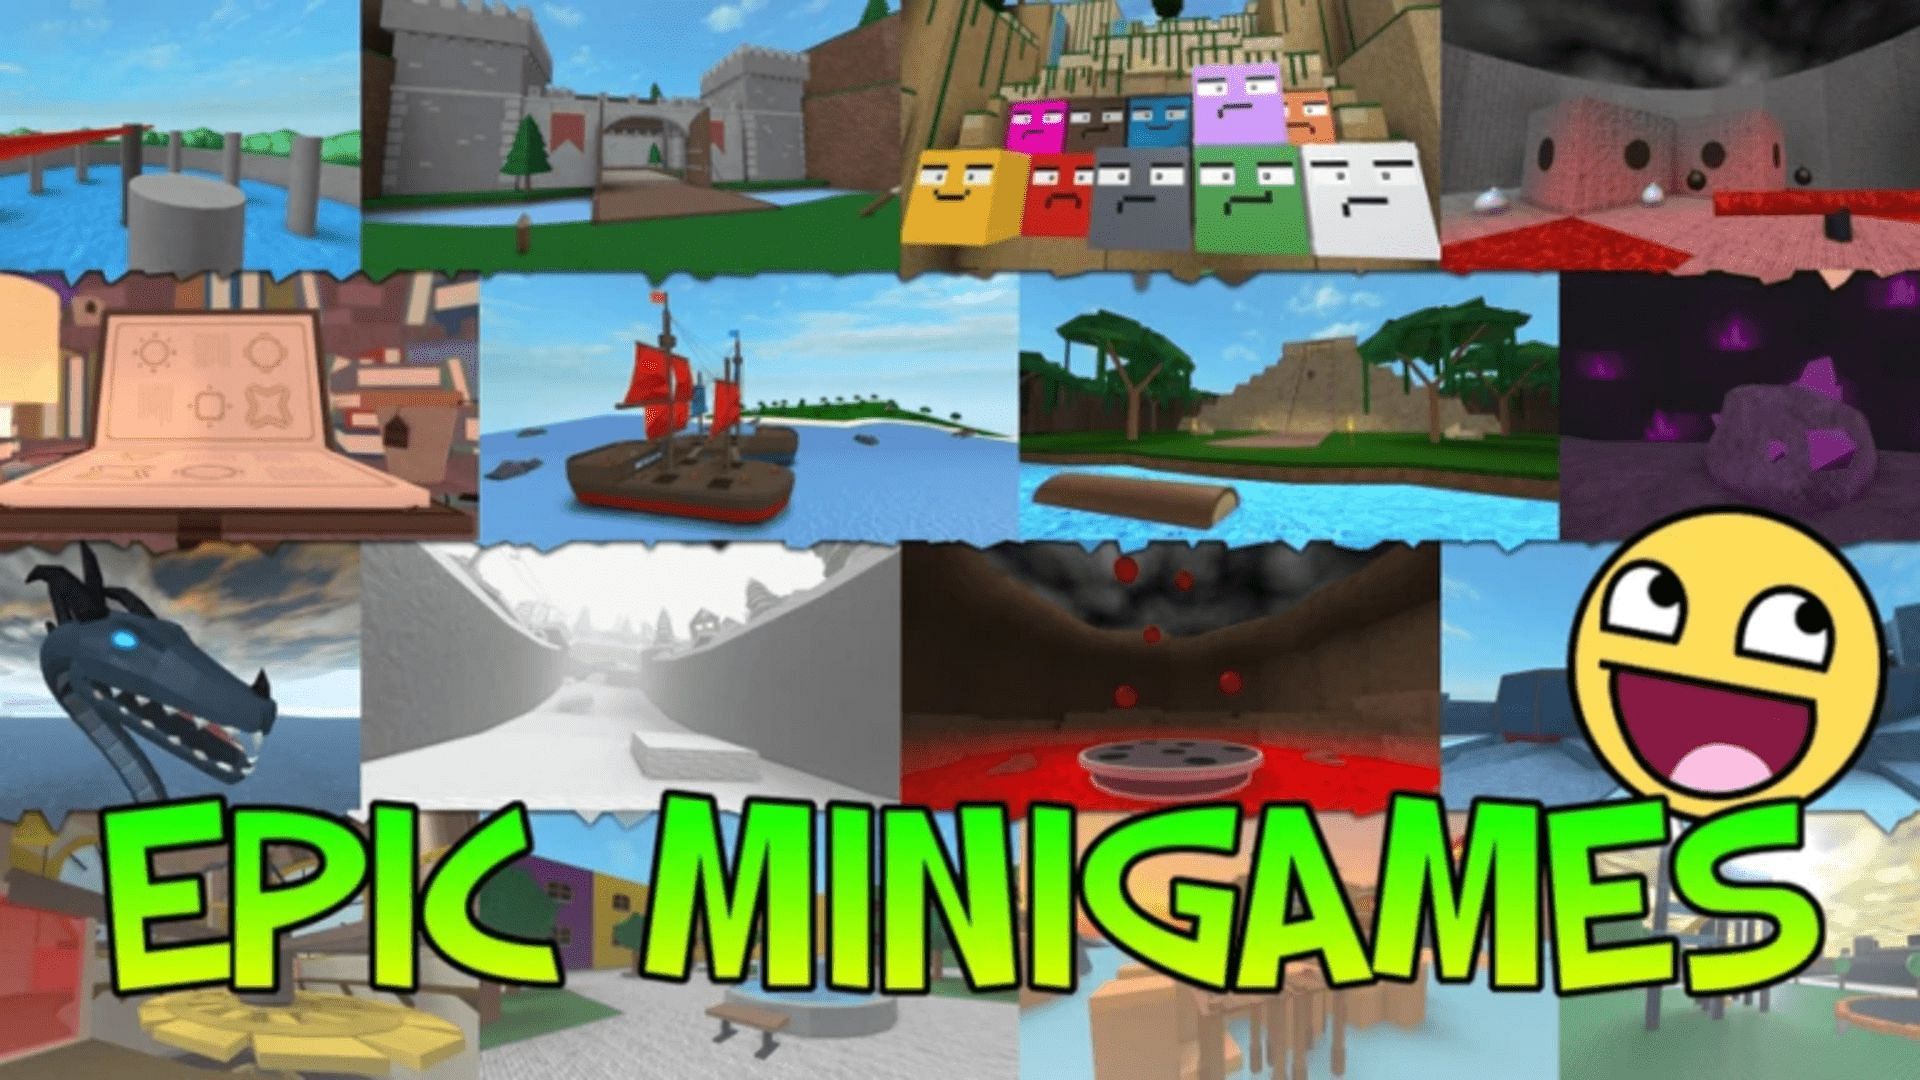 Epic Minigames beginner